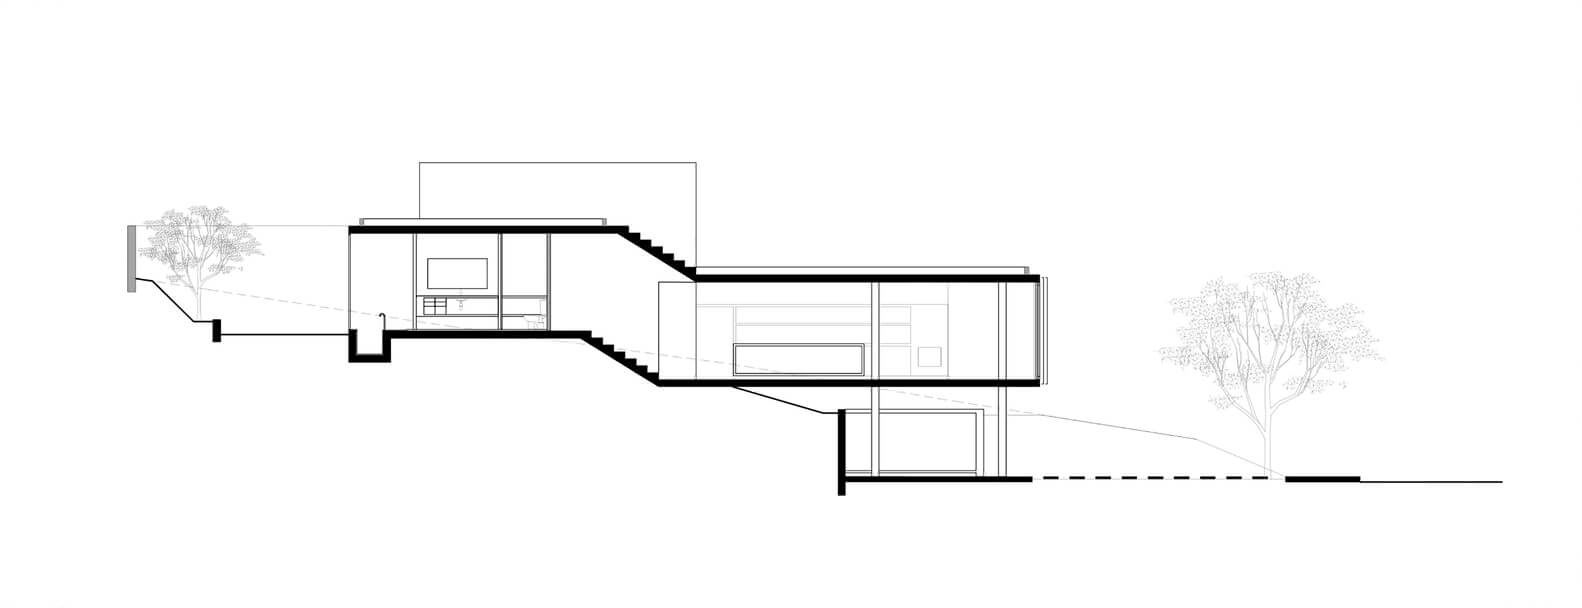 Casa Moderna em São José dos Campos por Obra Arquitetos 023 Corte bb